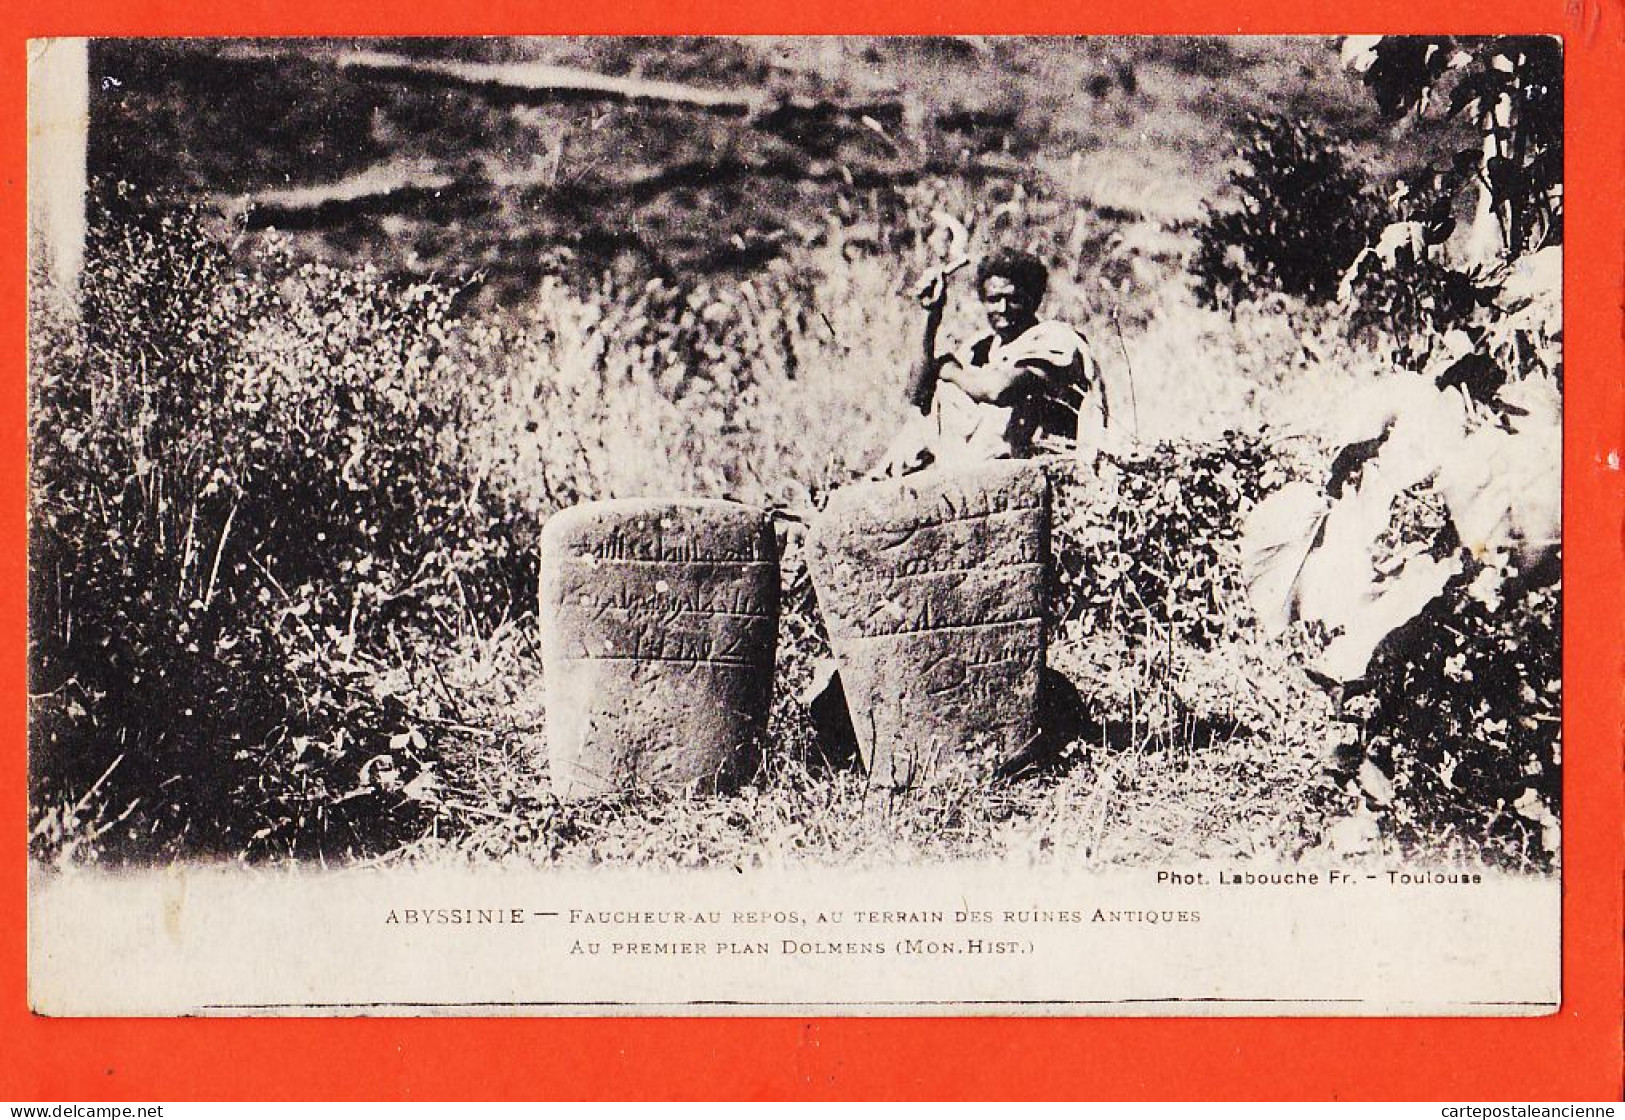 08002 ● ● Photo LABOUCHE  (!) ABYSSINIE Ethiopie Faucheur Au Repos Terrain Des Ruines Antiques Au Premier Plan Dolmens  - Ethiopie